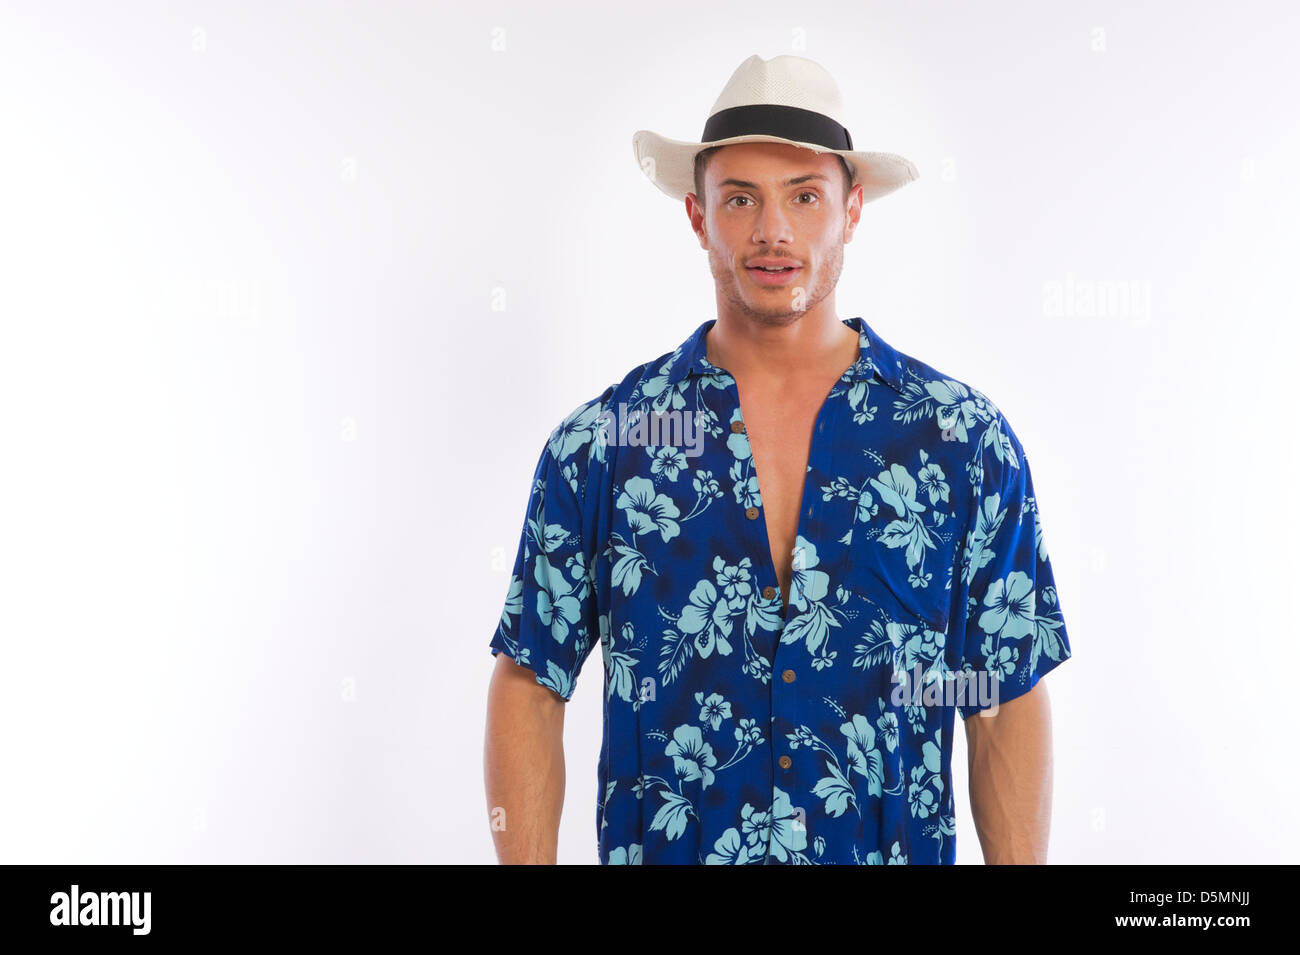 Hawaiian shirt man hi-res stock photography and images - Alamy